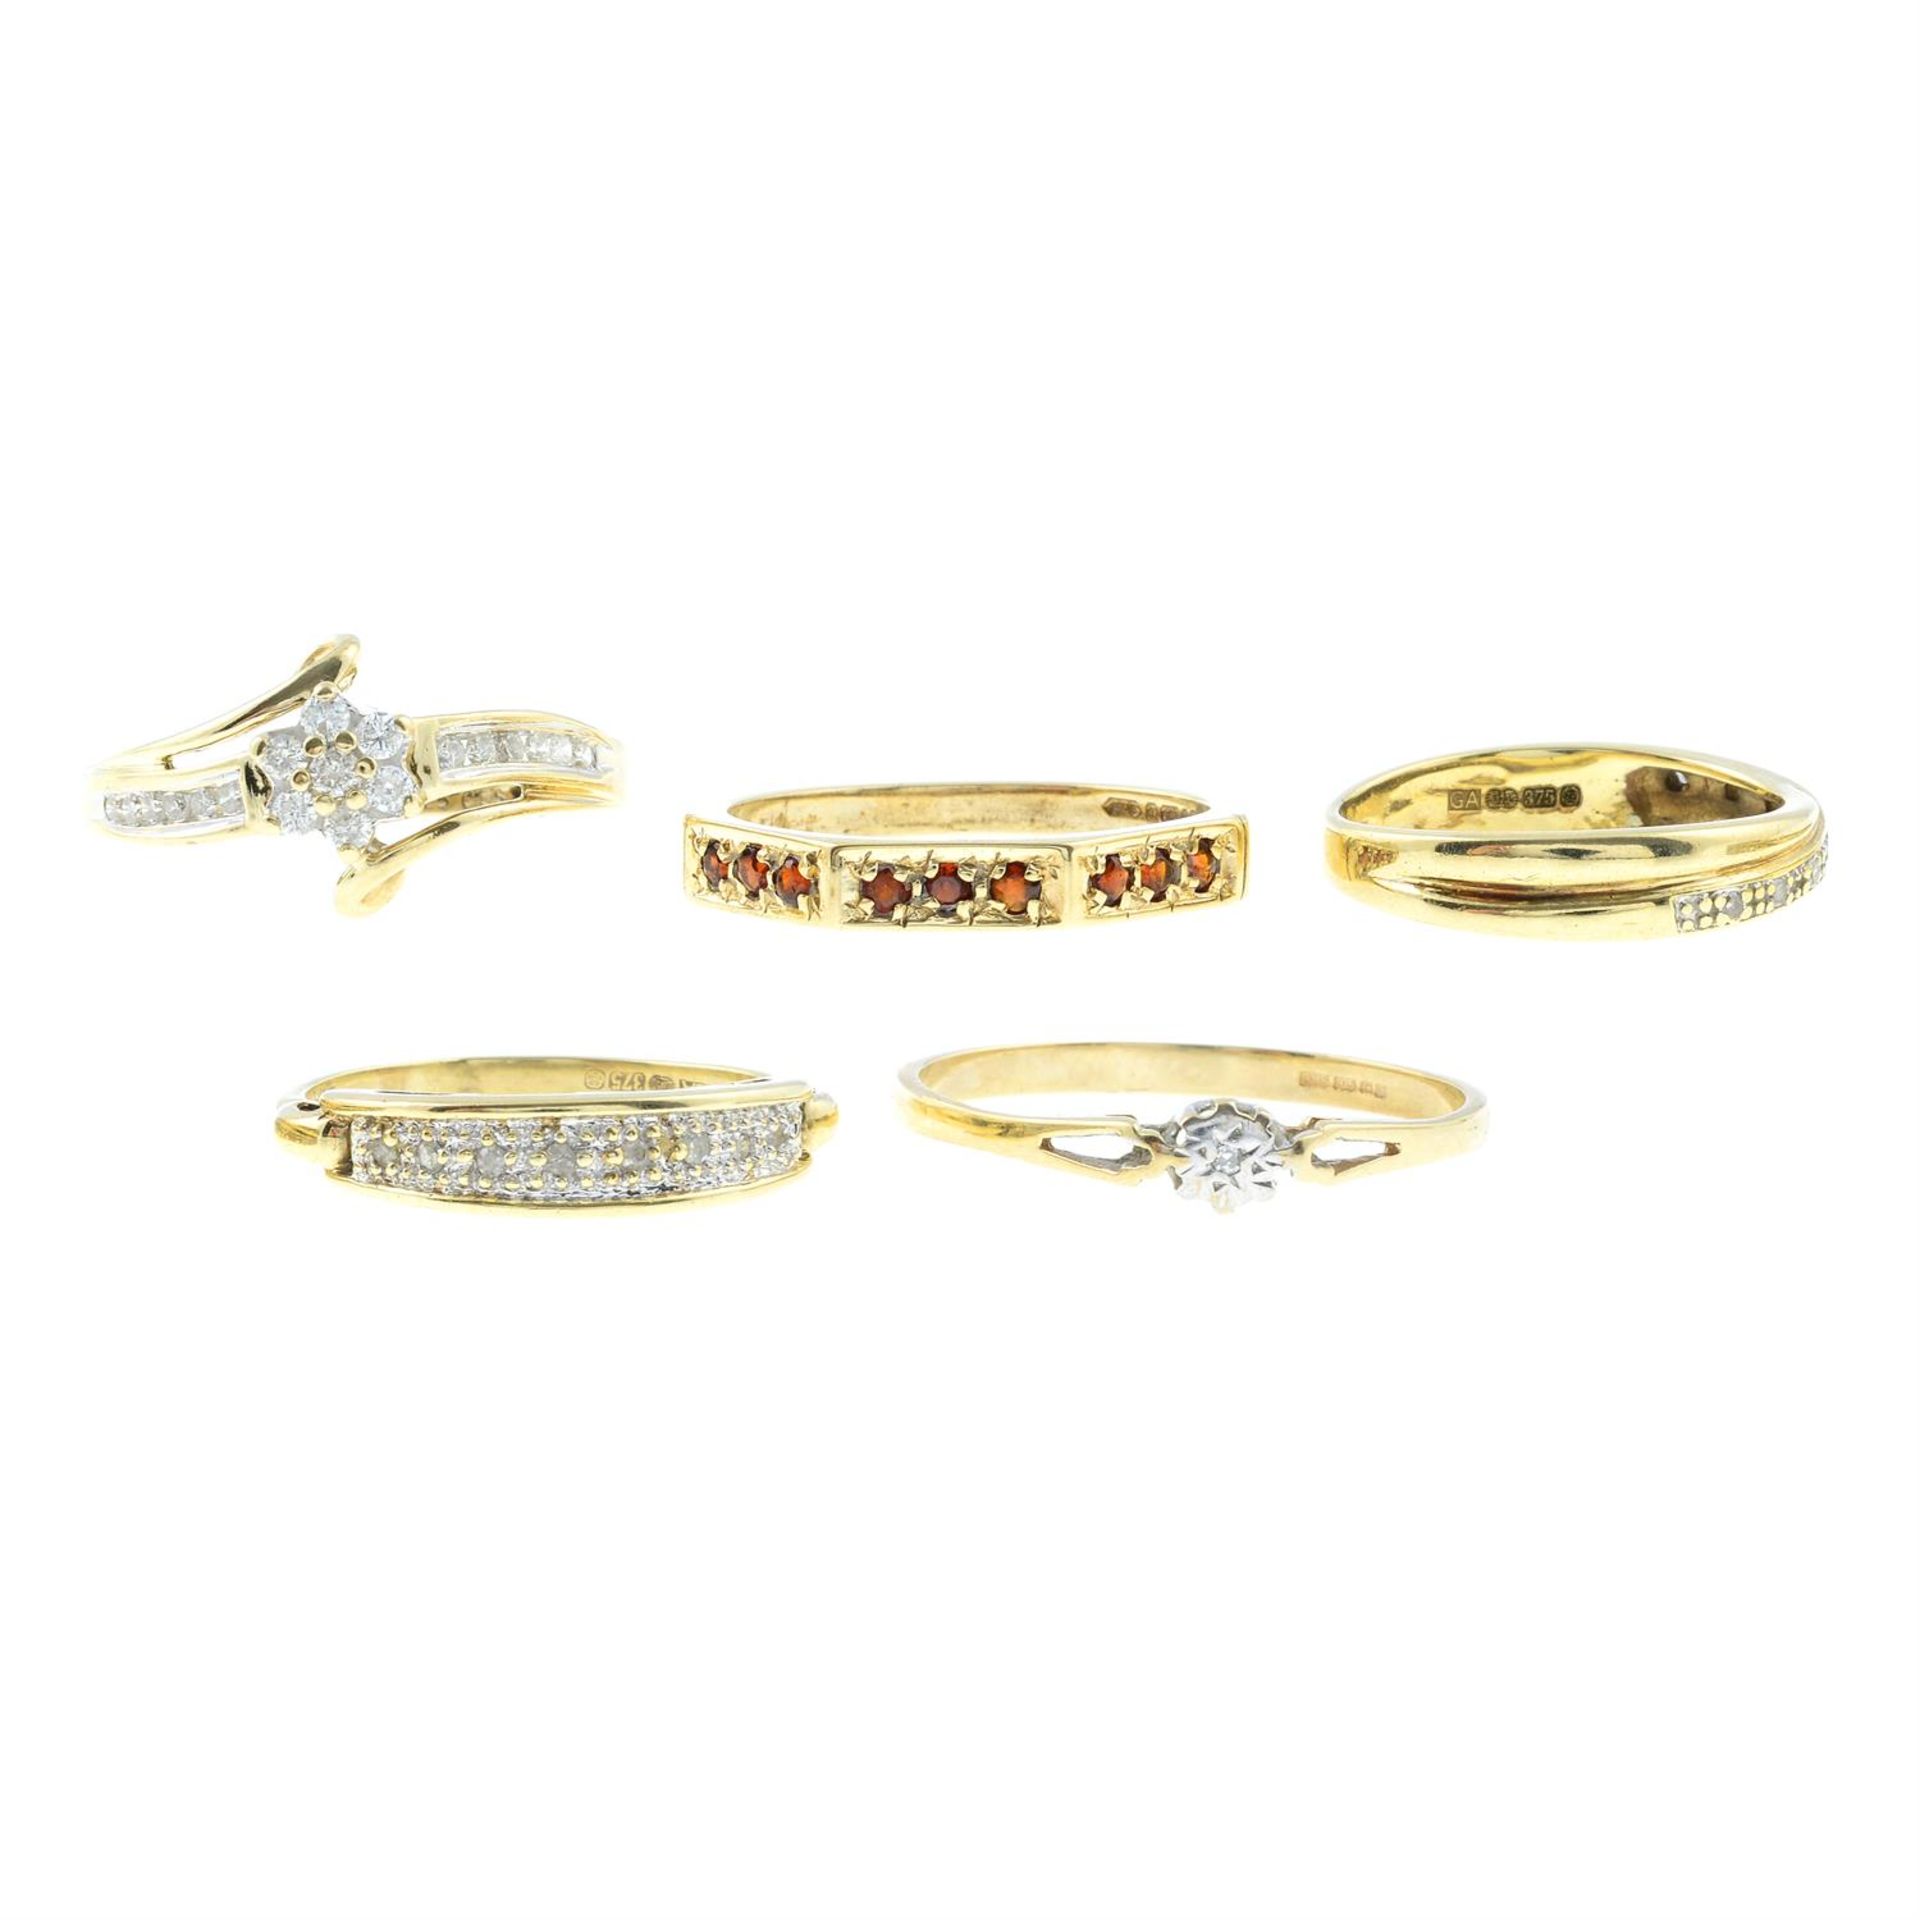 Five 9ct gold gem-set rings.